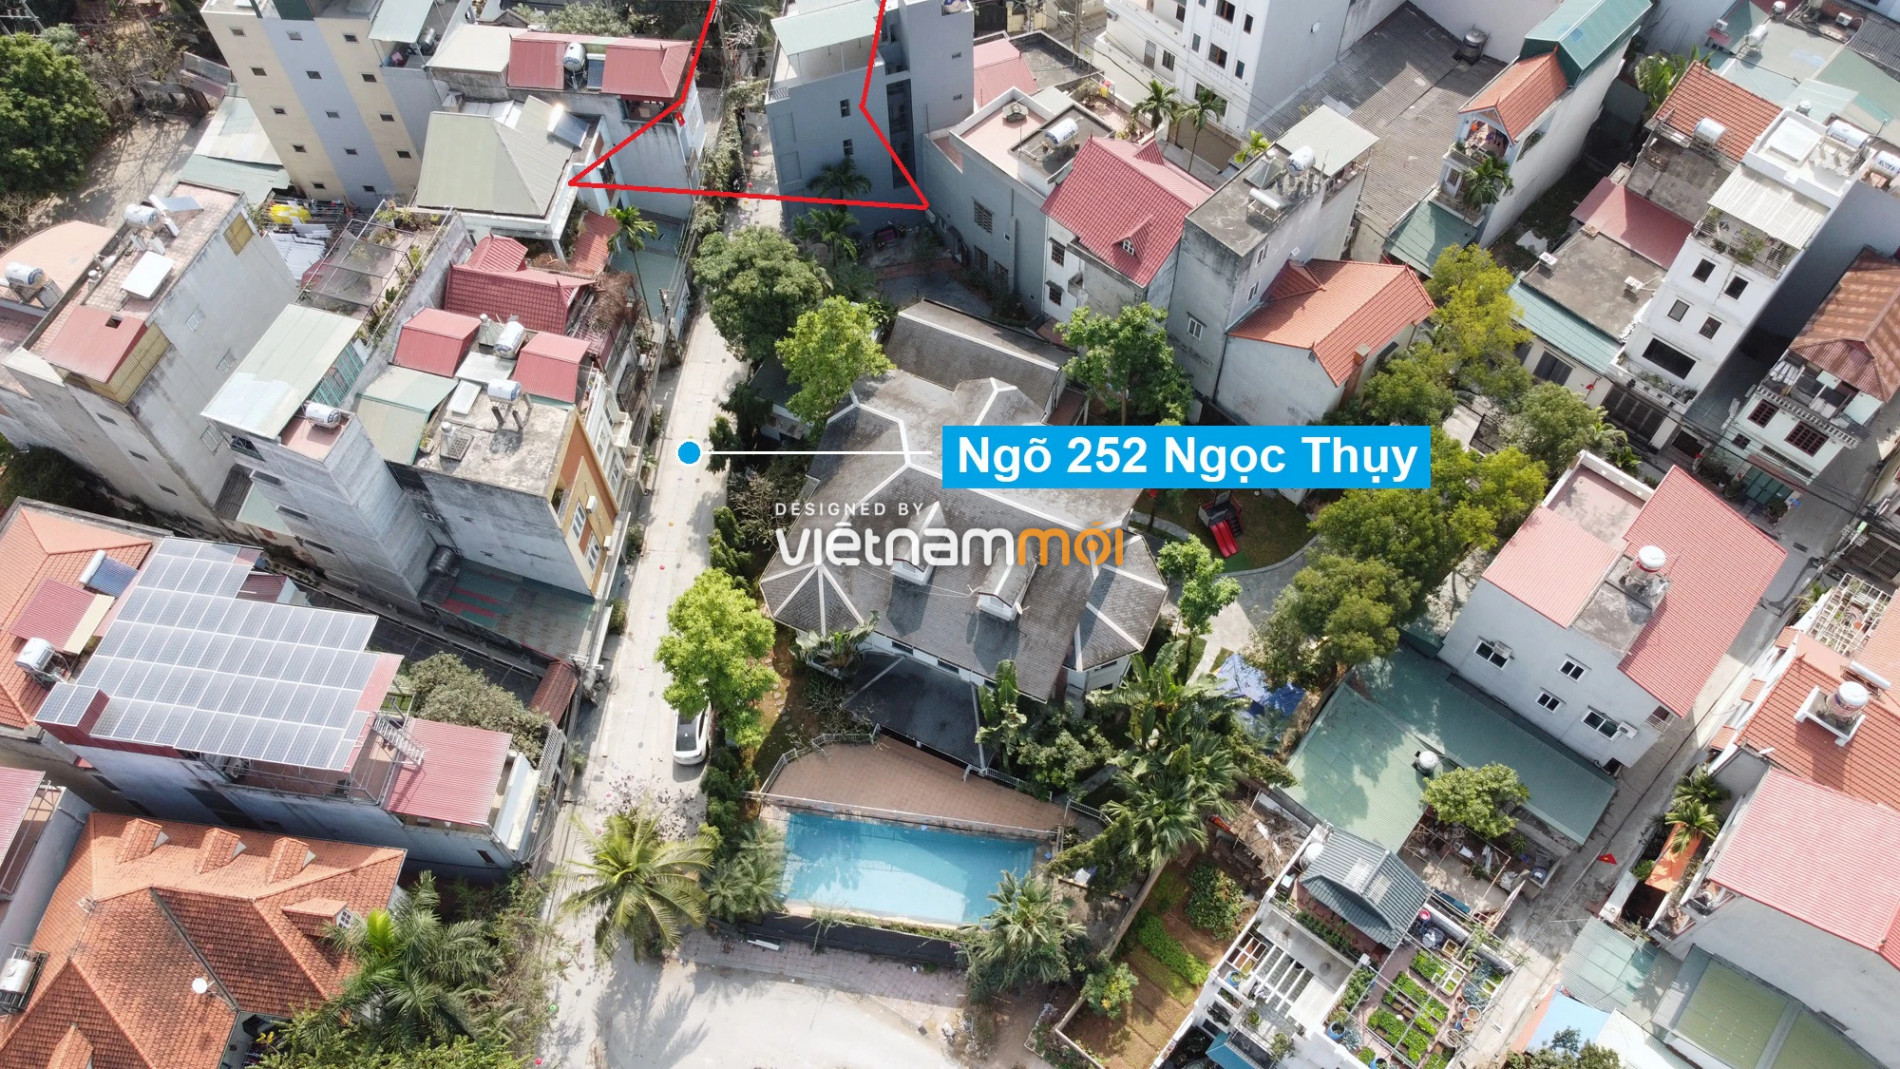 Những khu đất sắp thu hồi để mở đường ở phường Ngọc Thụy, Long Biên, Hà Nội (phần 4) - Ảnh 15.